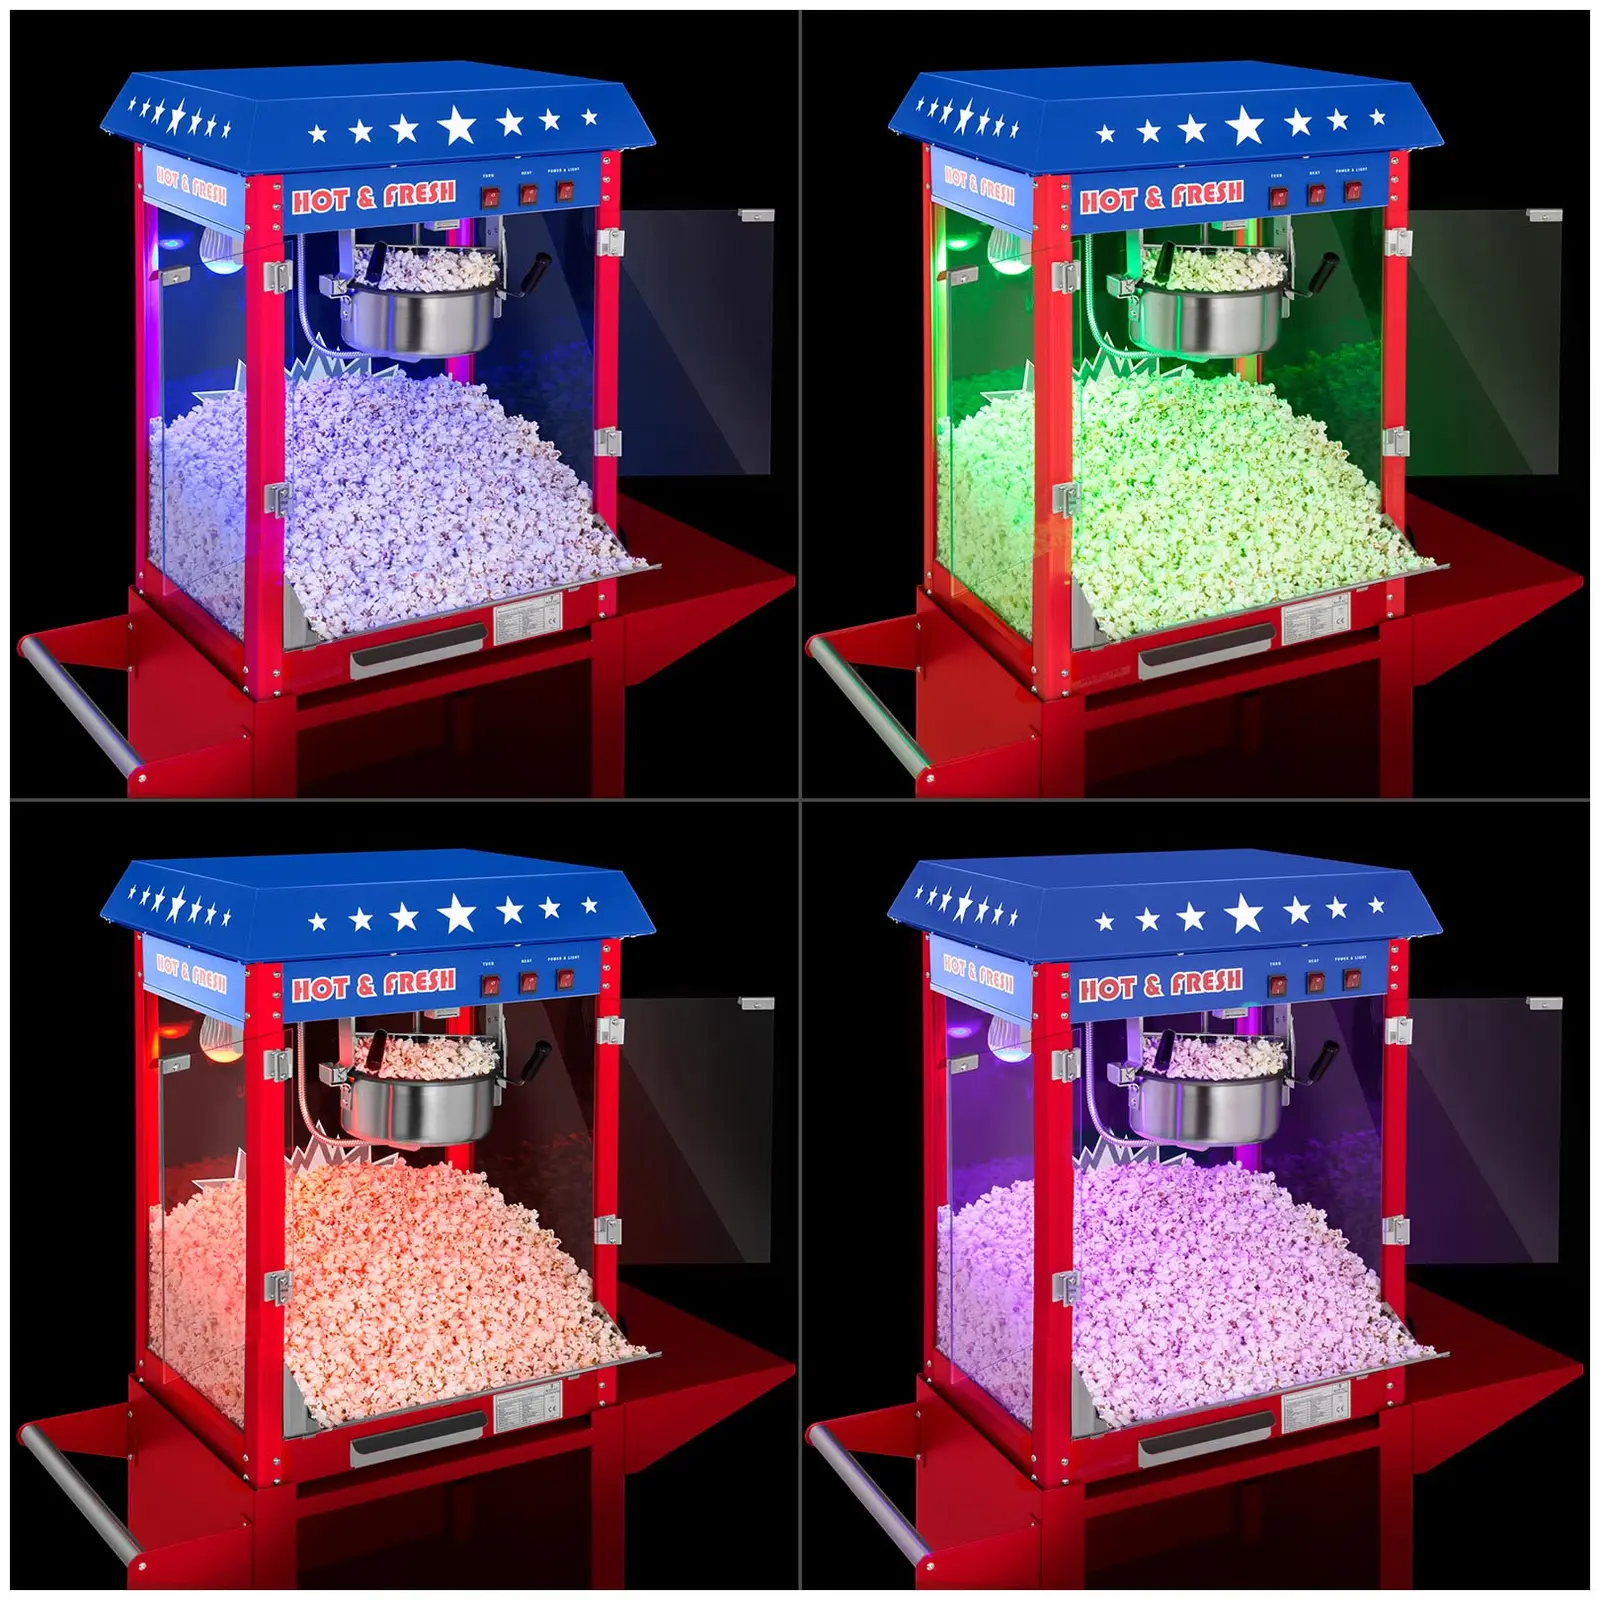 Popcornmaschine mit Wagen und LED-Beleuchtung - USA-Design - rot